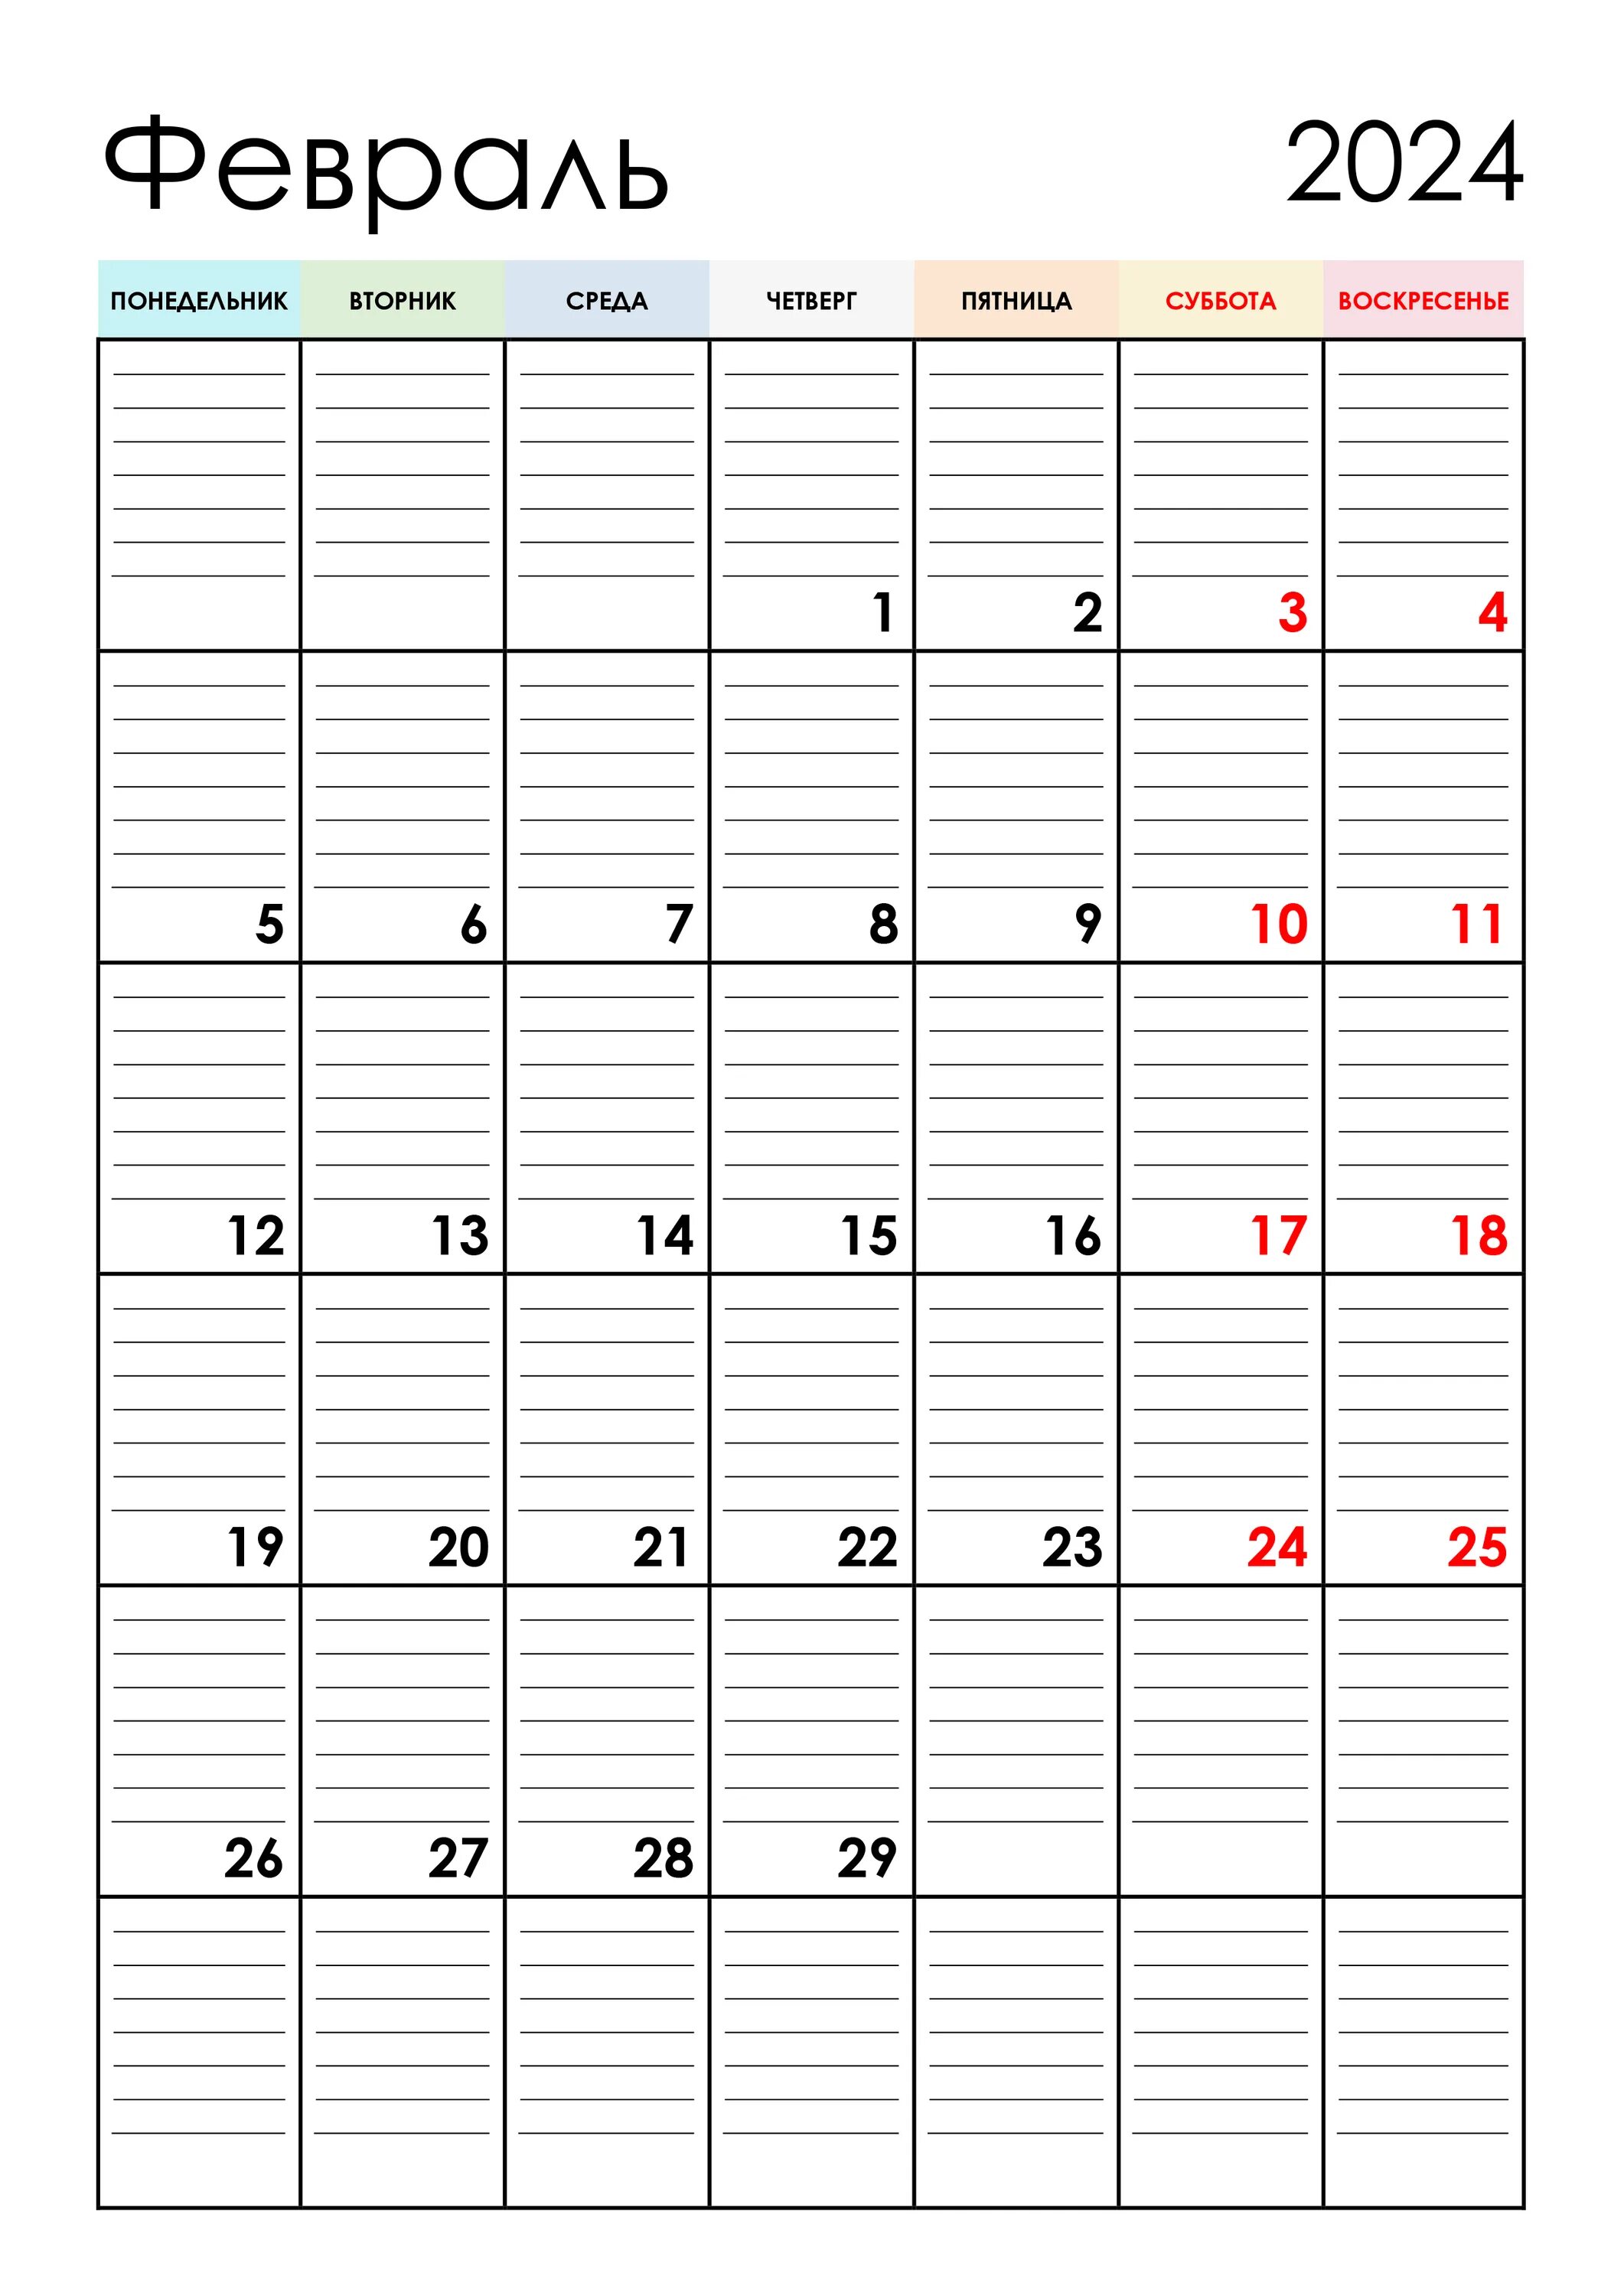 Календарь планер август 2023. Календарь планер на декабрь 2022 год. Календарь планер май июнь 2023. Календарь планер на июнь 2023 года. Календарь на май июнь 2024 года